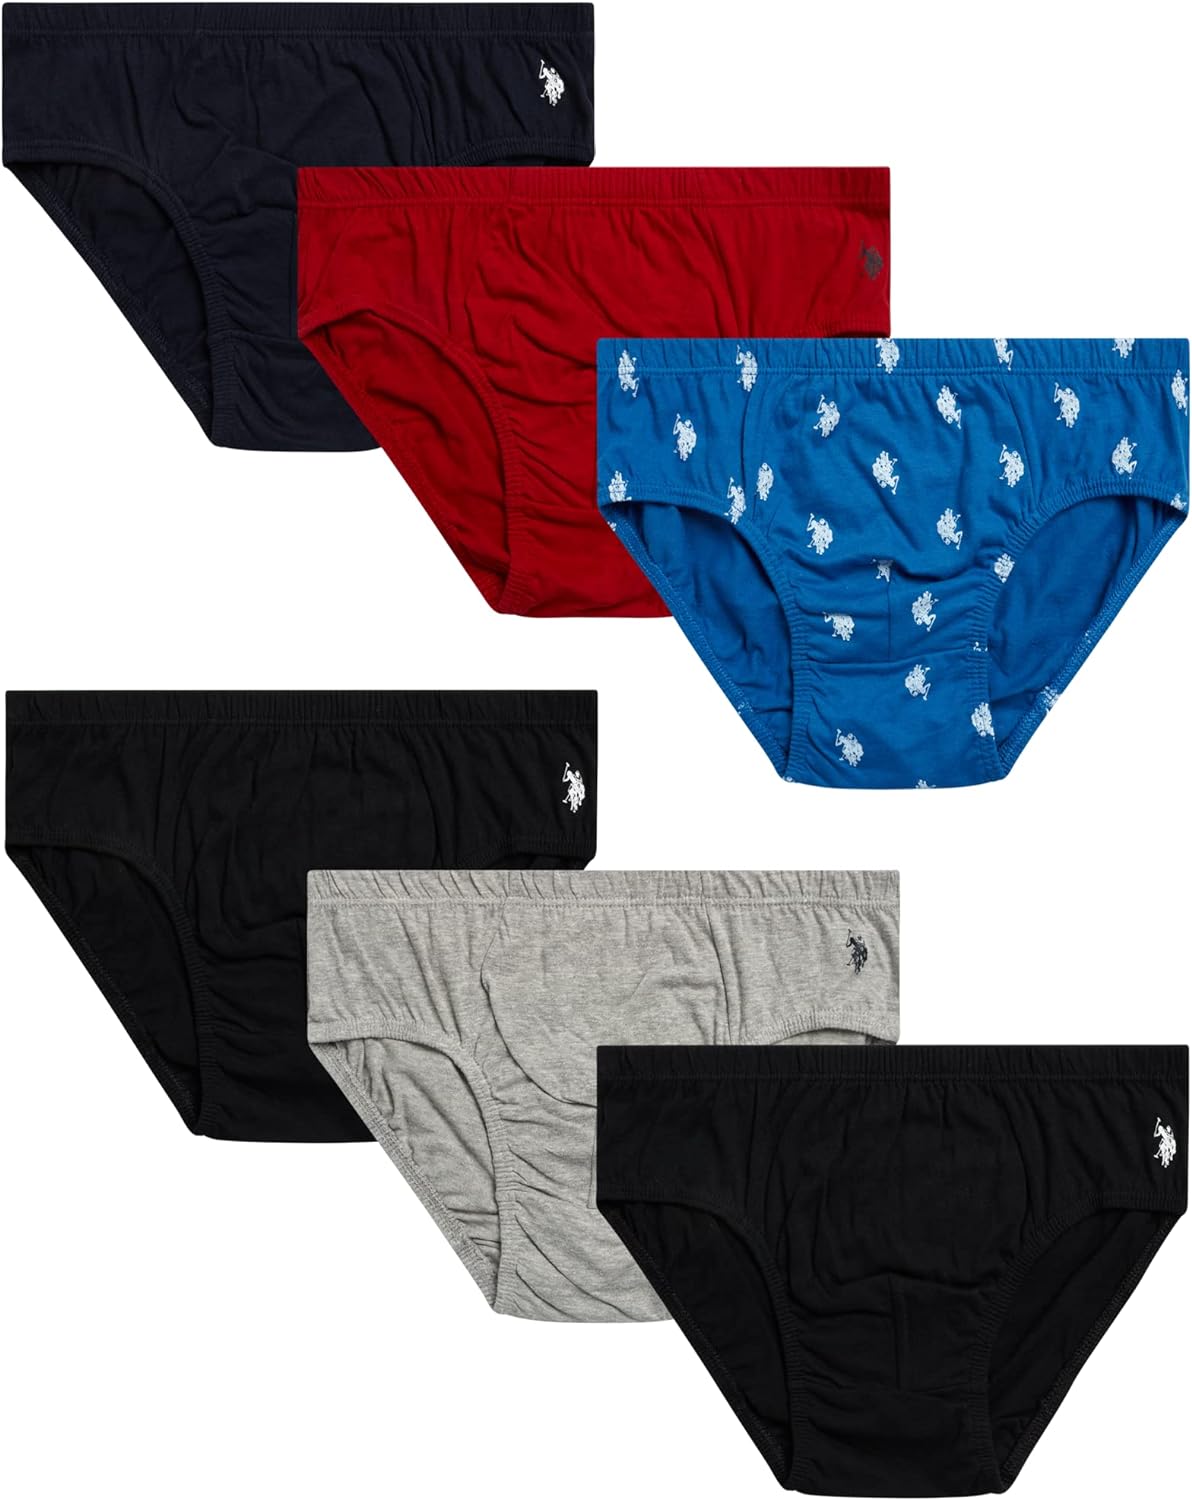 U.S. Polo Assn. Men's Underwear - Low Rise Briefs with Contour Pouch (6 Pack)